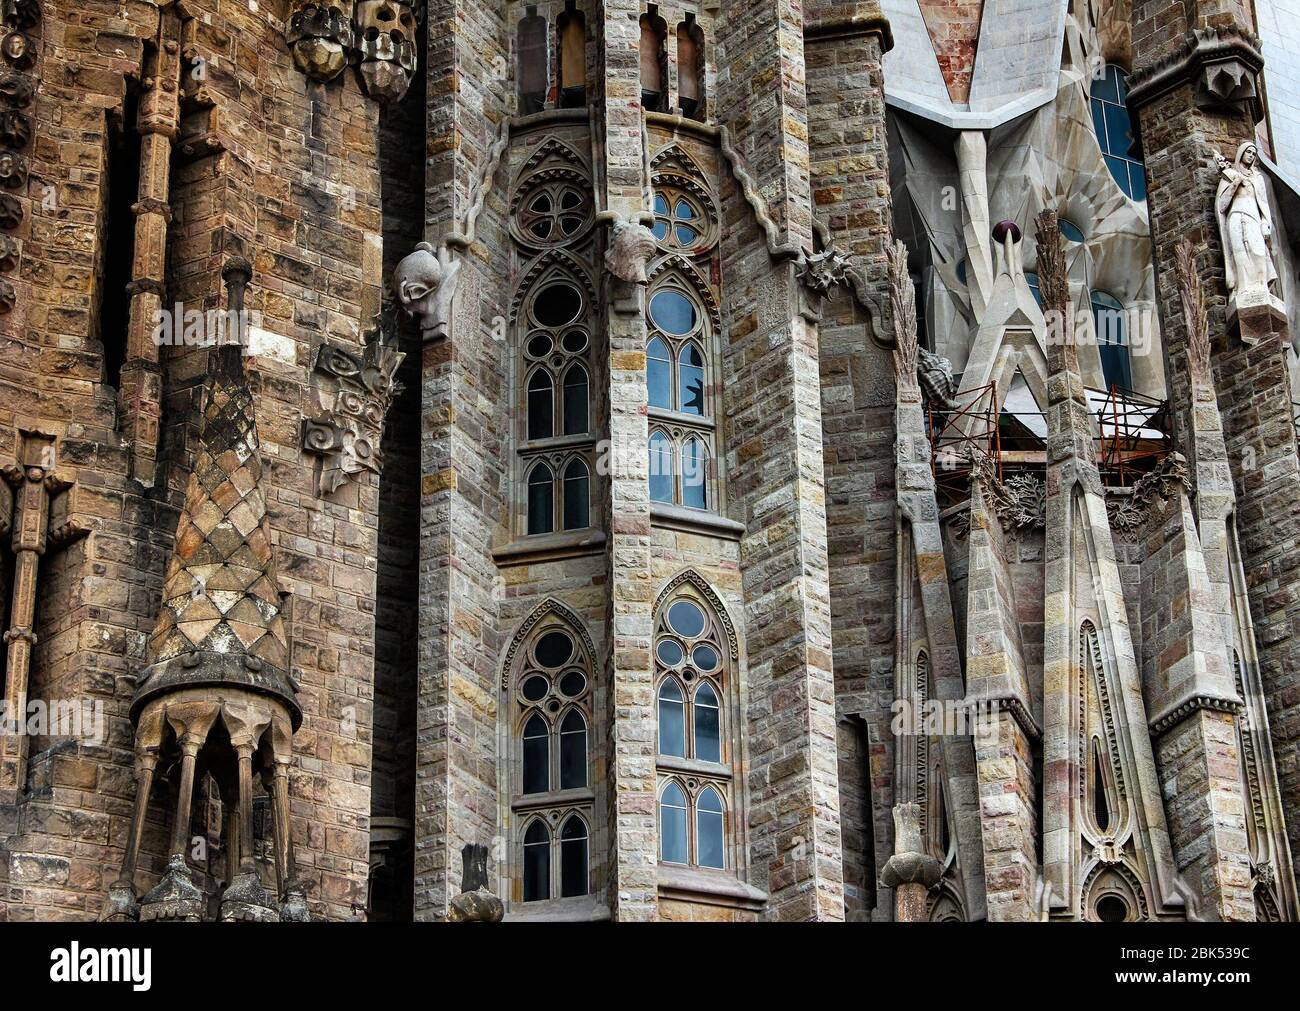 Détails de la Basílica de la Sagrada Família (Basilique de la famille Sacrée) - célèbre œuvre d'architecture d'Antoni Gaudi. Barcelone, Catalogne, Espagne. Banque D'Images